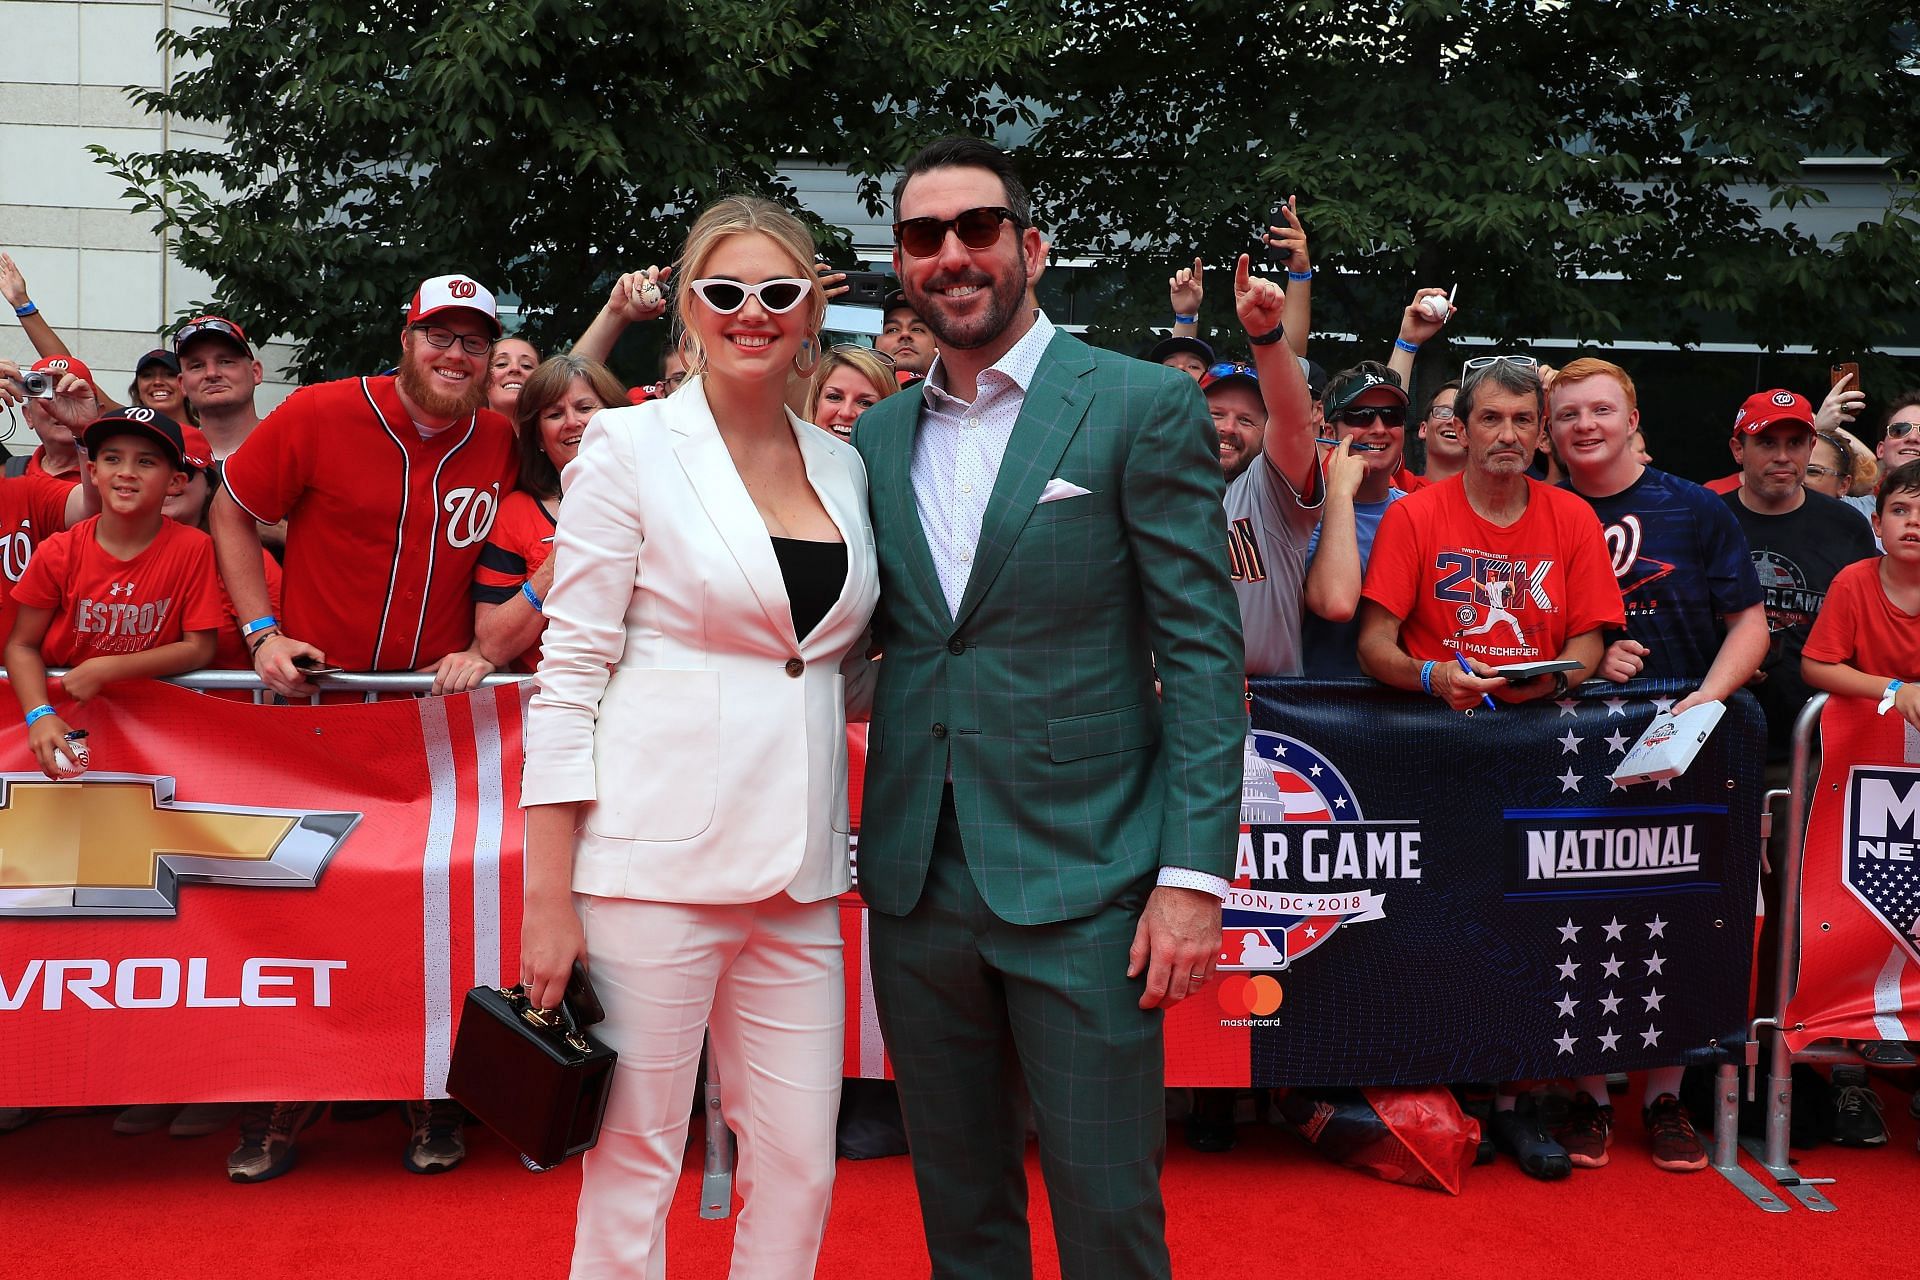 Kate Upton, Husband Justin Verlander Bring Daughter to MLB Event